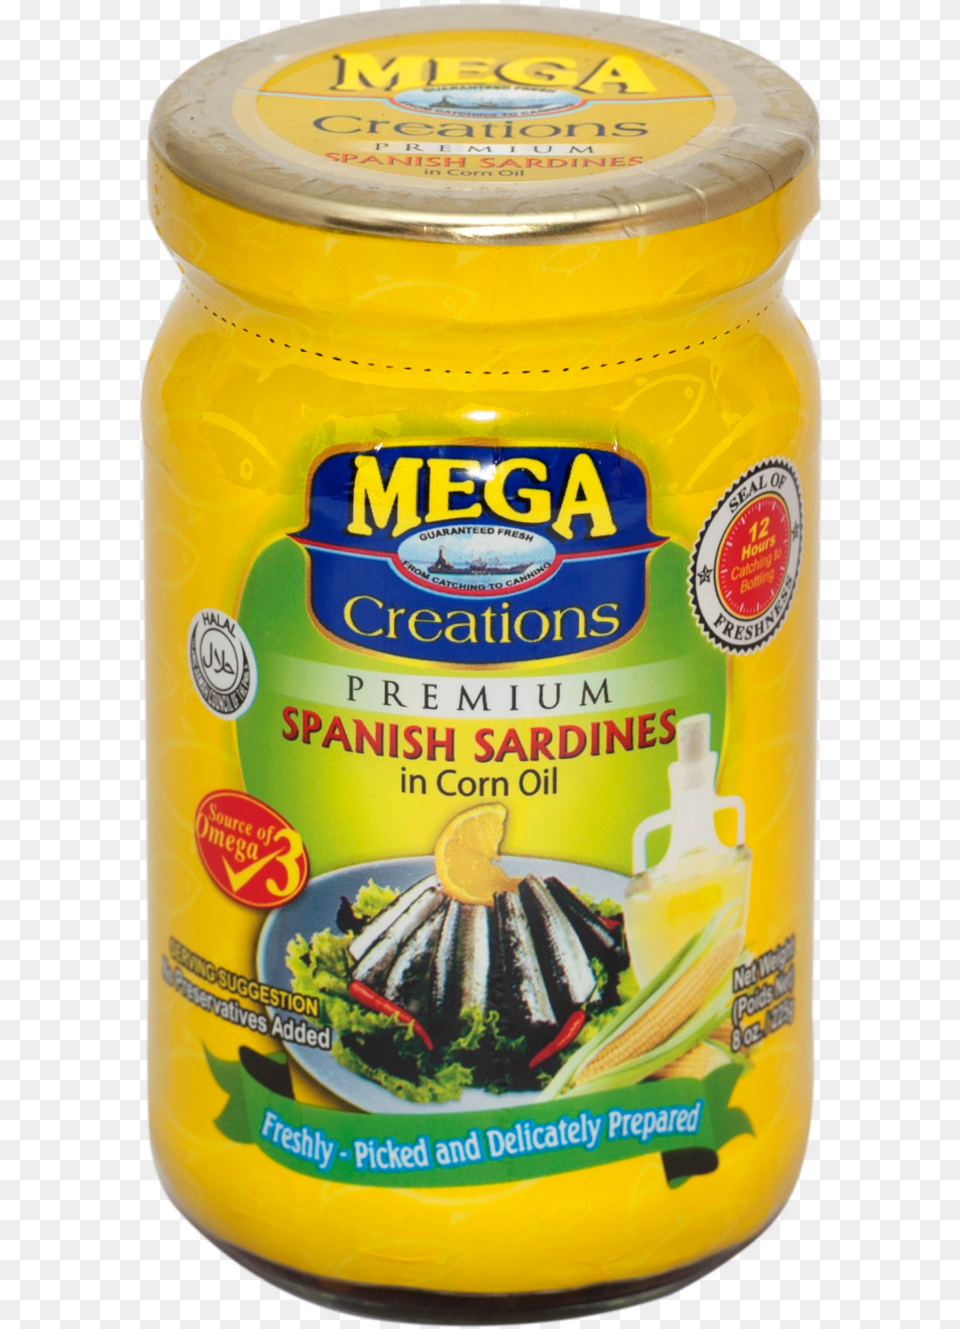 Mega Spanish Sardines Hot, Can, Tin, Food Png Image